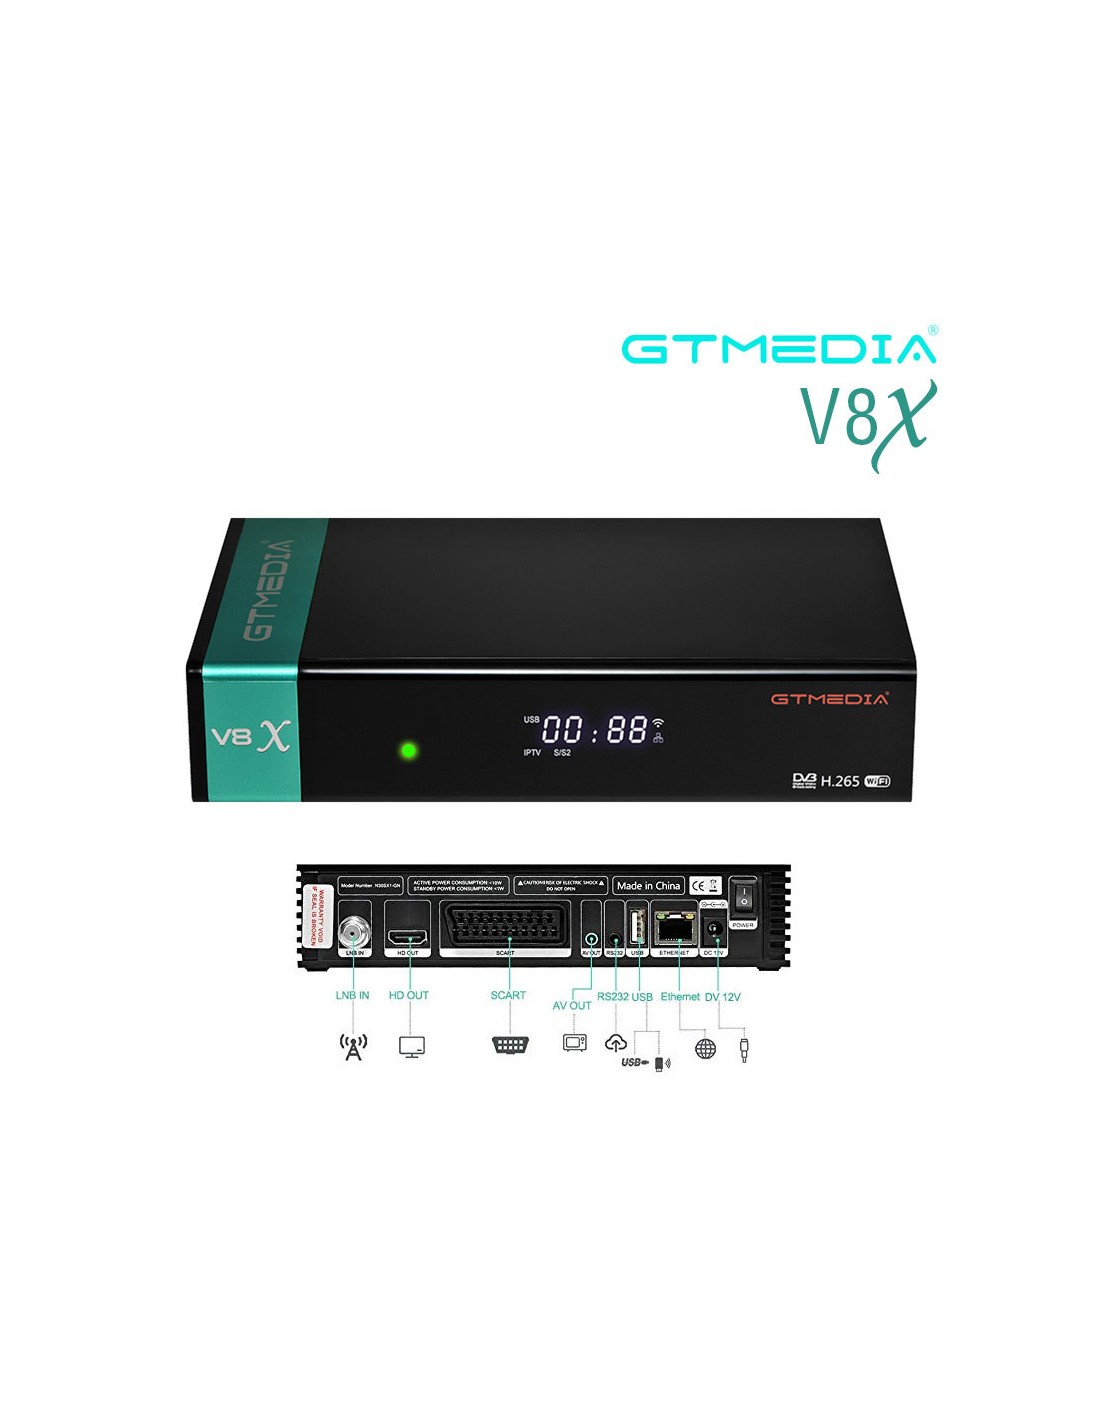 GTMEDIA V8X HD H.265 Receptor de TLC Decodificador Spain